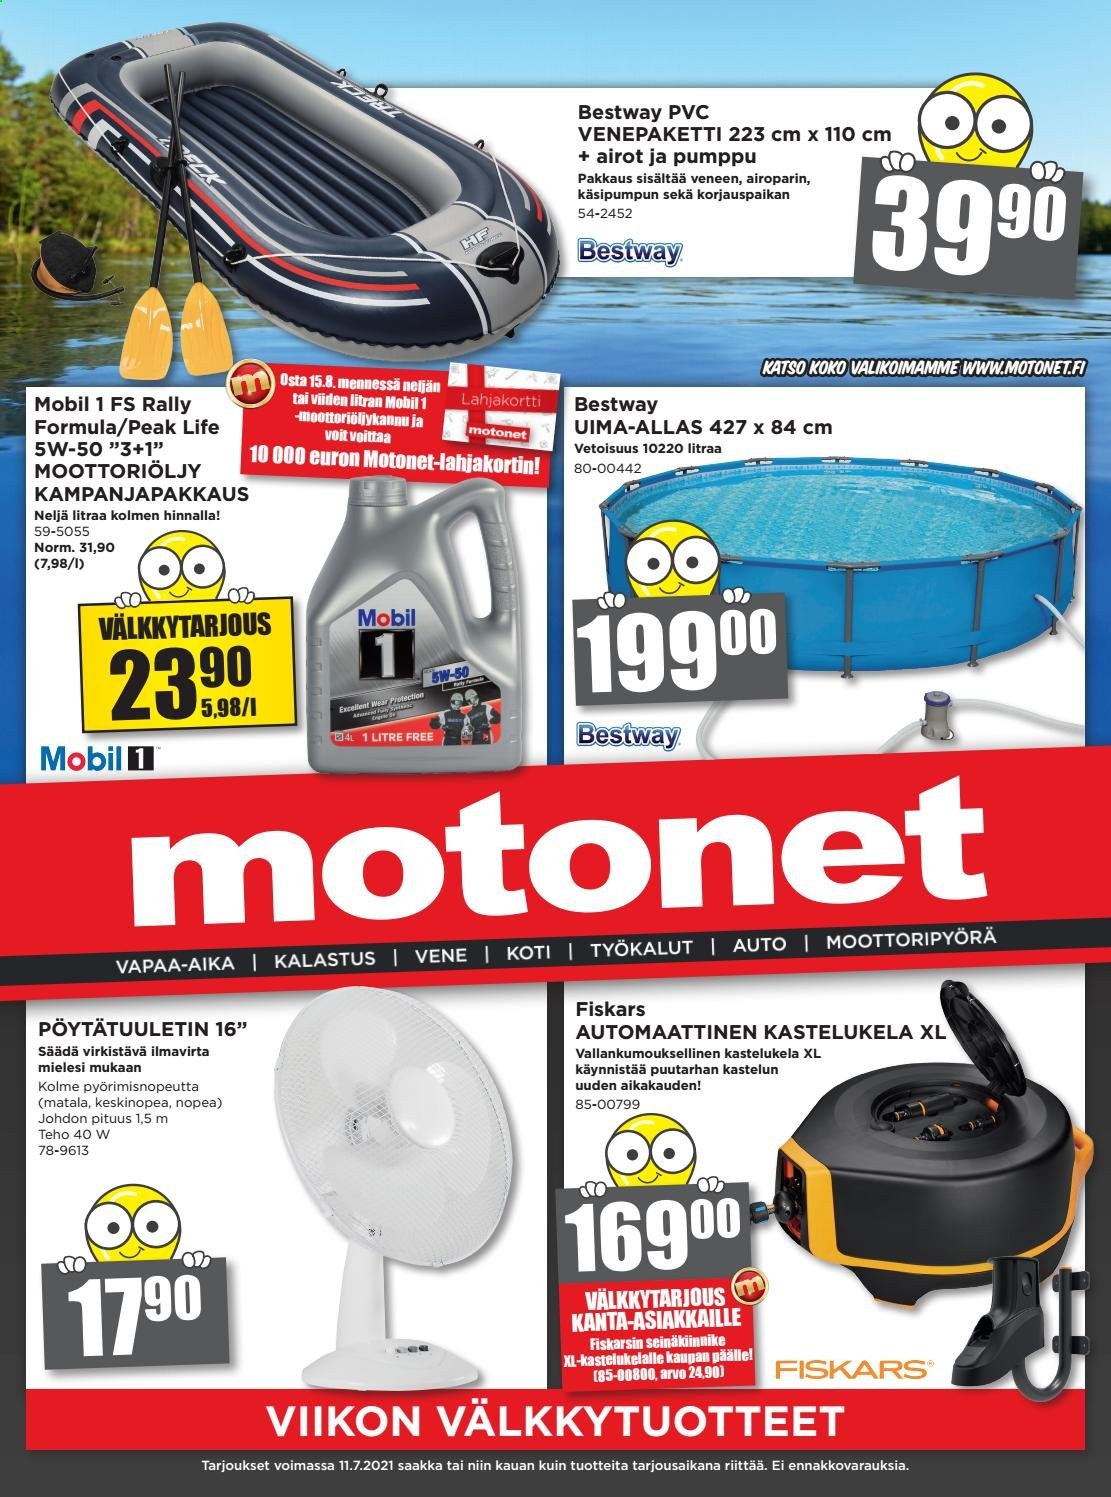 thumbnail - Motonet tarjoukset  - 30.06.2021 - 11.07.2021 - Tarjoustuotteet - Bestway, Fiskars, uima-allas, Mobil 1. Sivu 1.